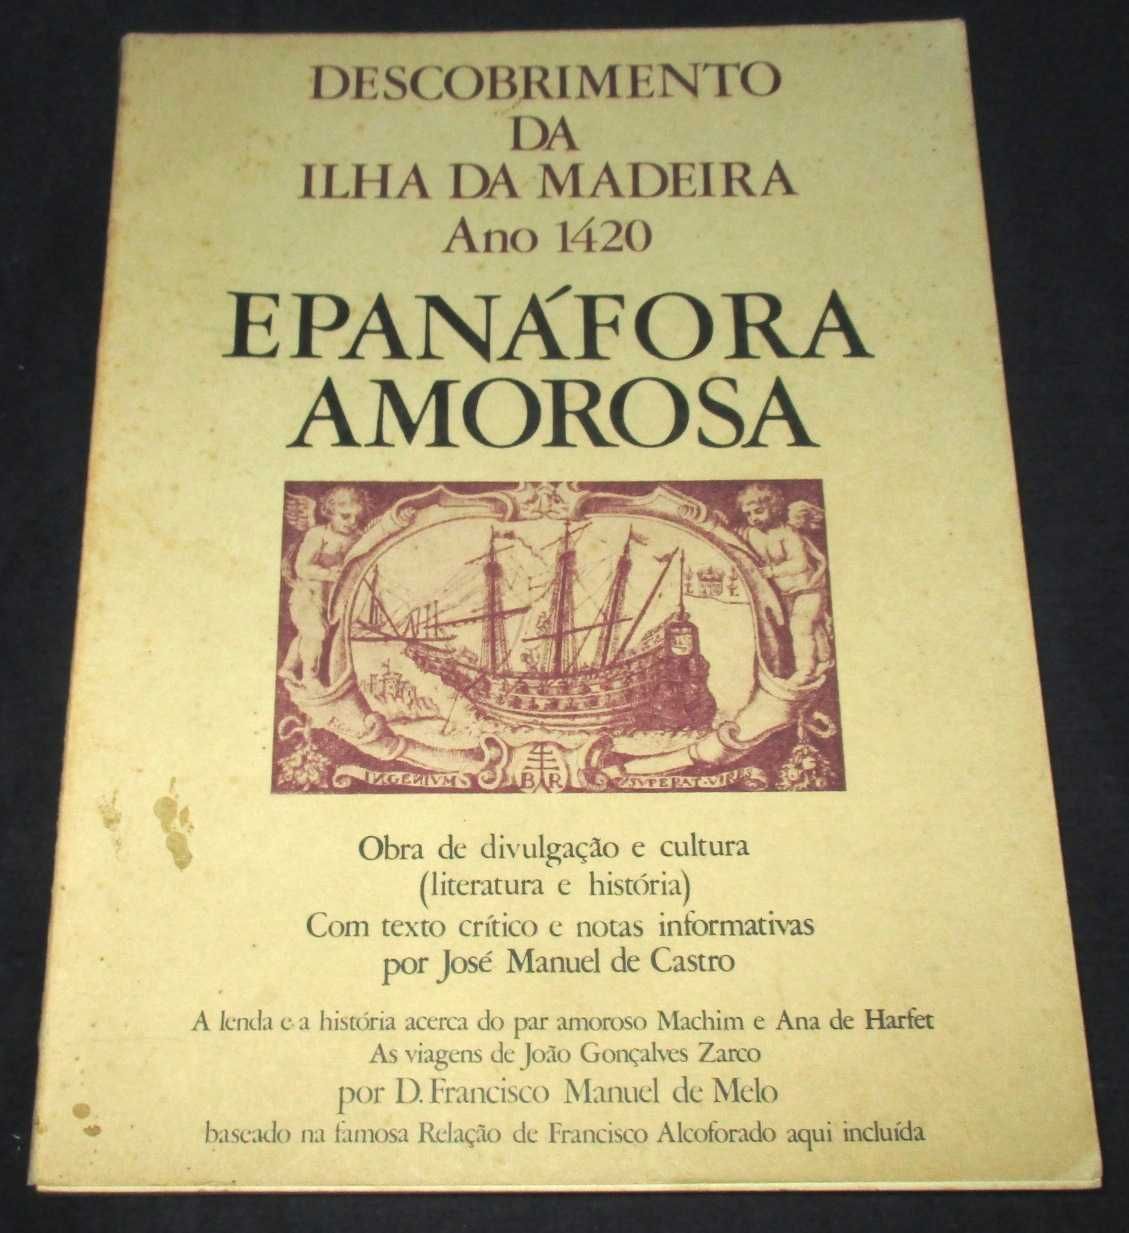 Livro Descobrimento da Madeira Epanáfora Amorosa 1420